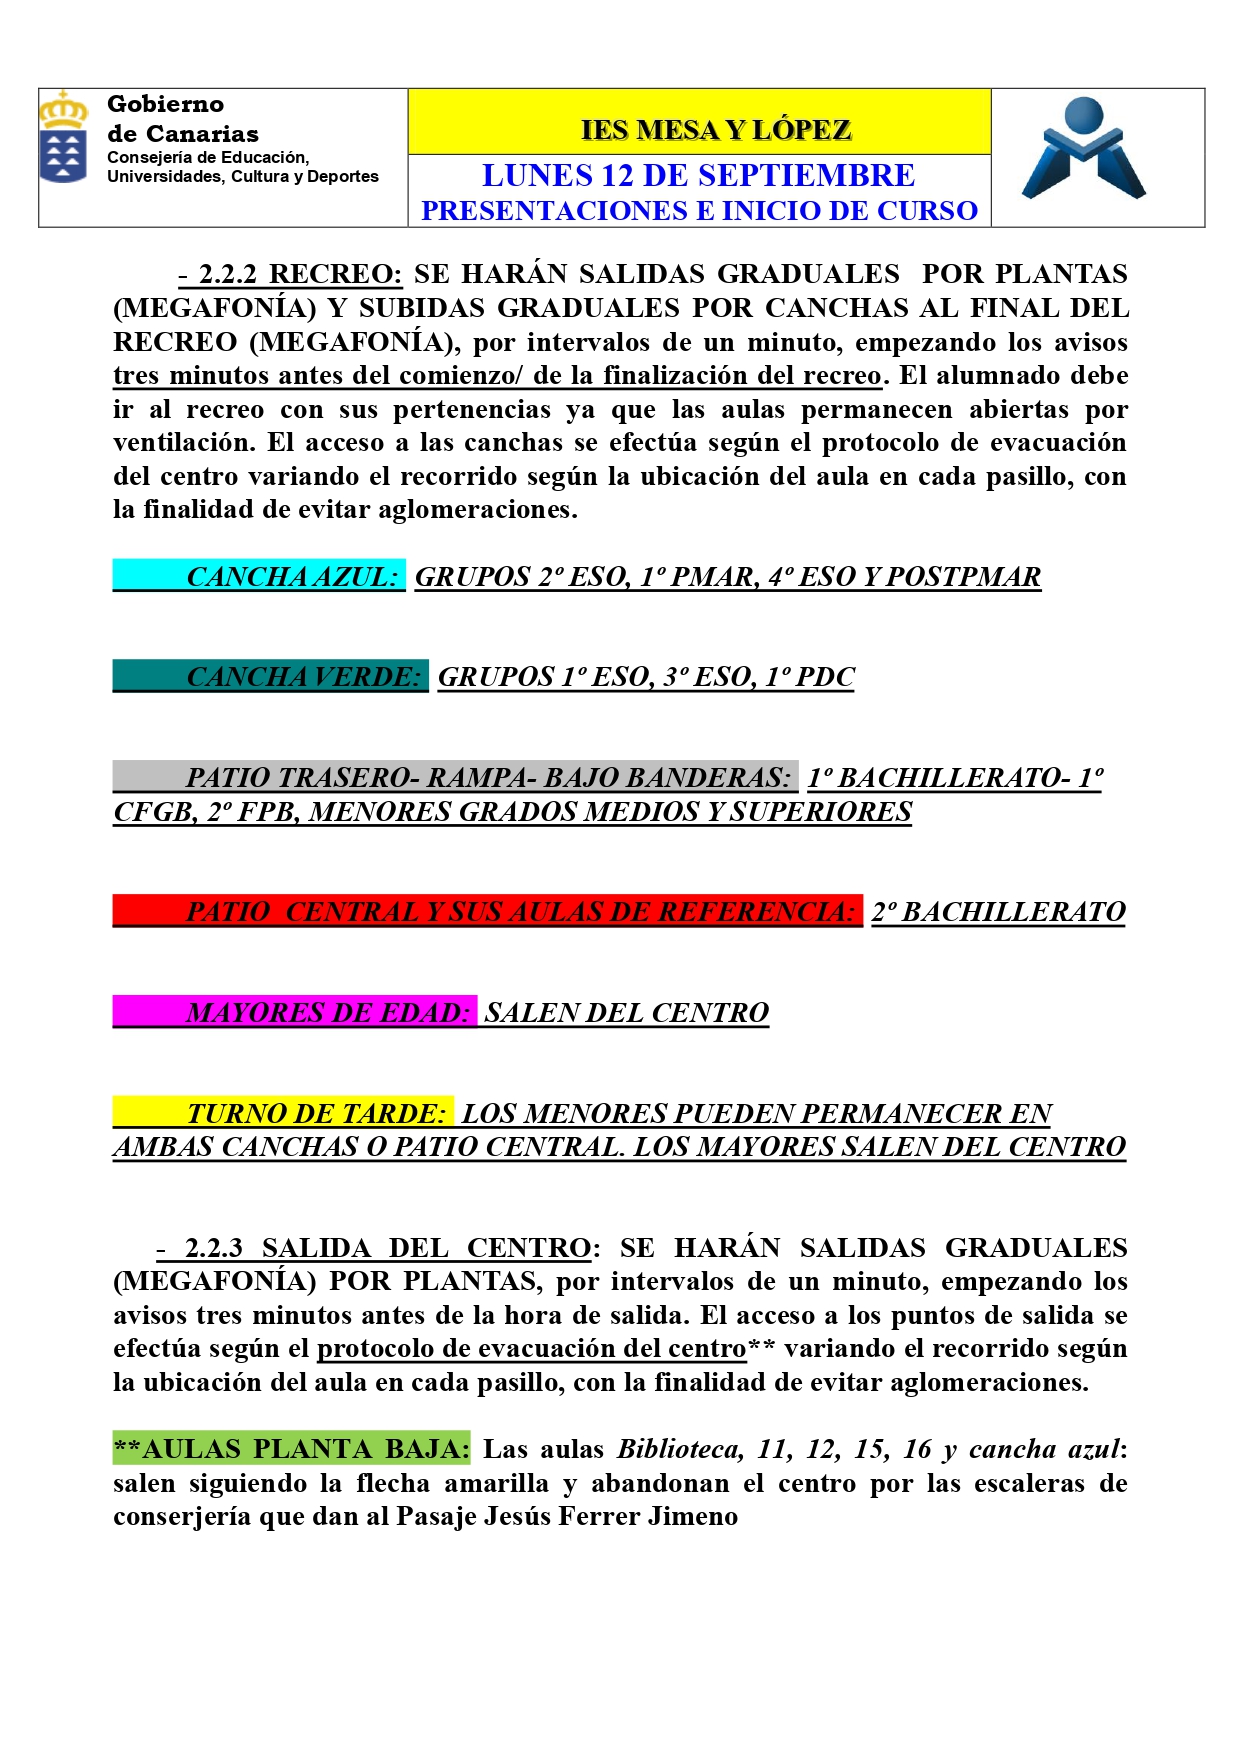 0.1 PRESENTACIONES E INICIO DE CLASES 12 SEPTIEMBRE page 0009